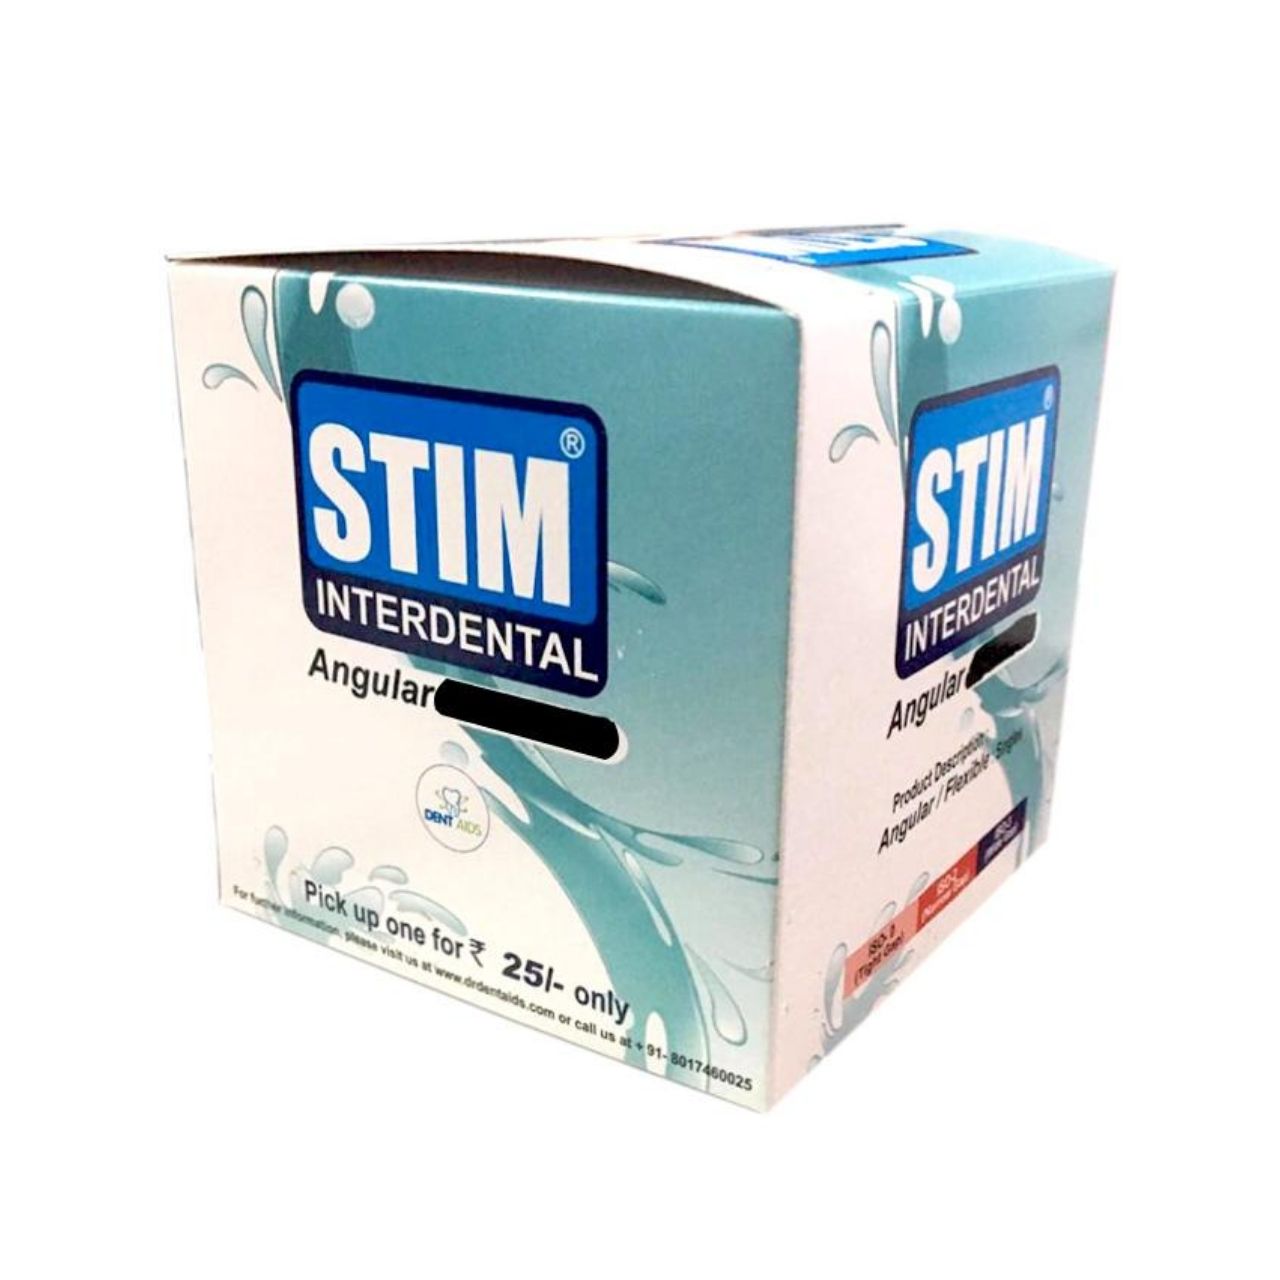 STIM Interdental  Angular Brush Professional Pack - 50 Brushes